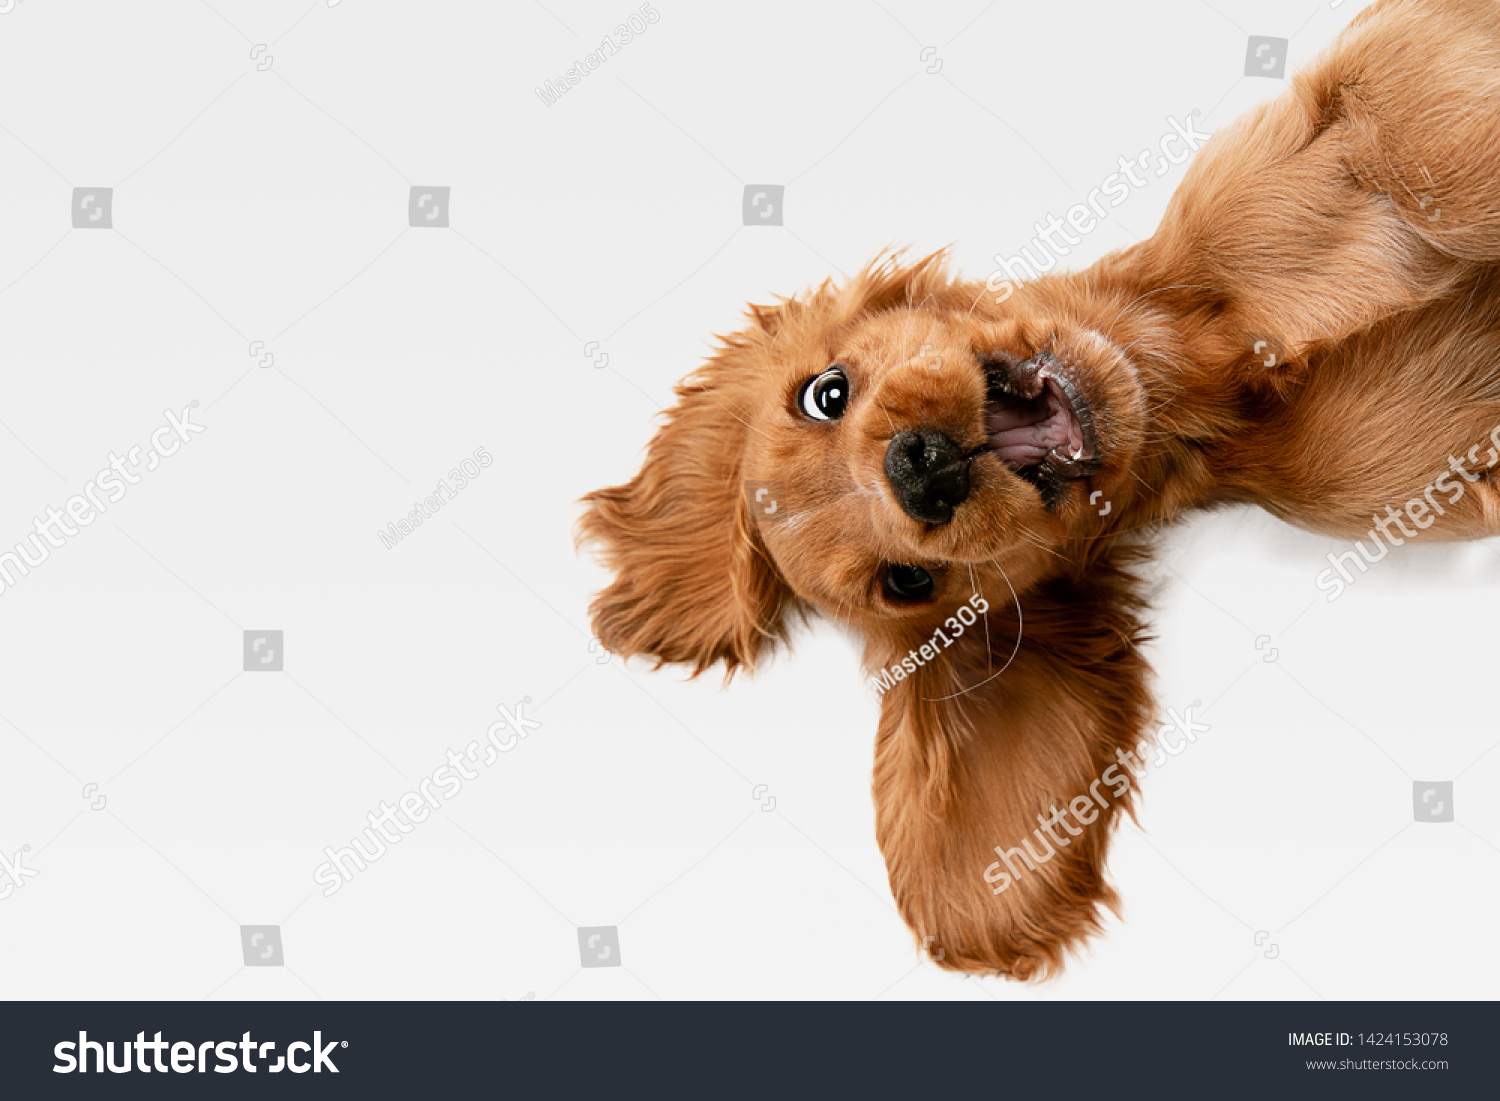 純粋な若さが狂っている 英国のコッカー スパニエルの若い犬がポーズをとっている かわいい遊び心の白い犬やペットが白い背景に遊び 幸せそうに見える 運動 行動 動きのコンセプト の写真素材 今すぐ編集